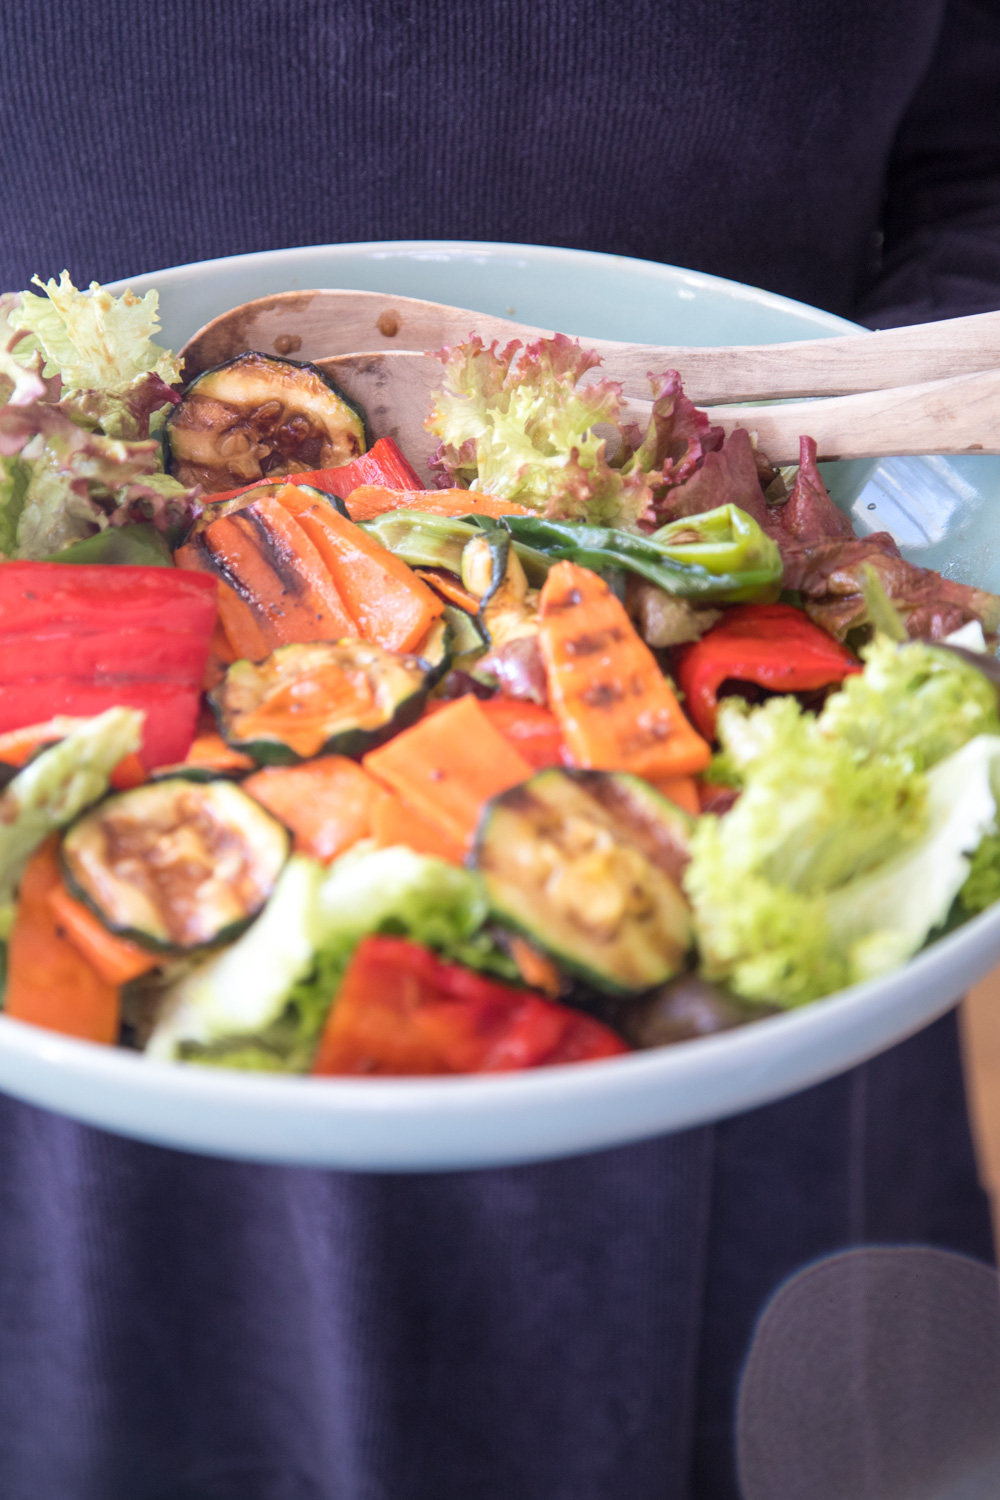 Salat mit gegrillter Paprika, Zucchini und Karotten sorgt für Röstaromen auf dem Salatteller. Eine tolle alternative Salatidee, die ohne Aufwand viel hermacht.